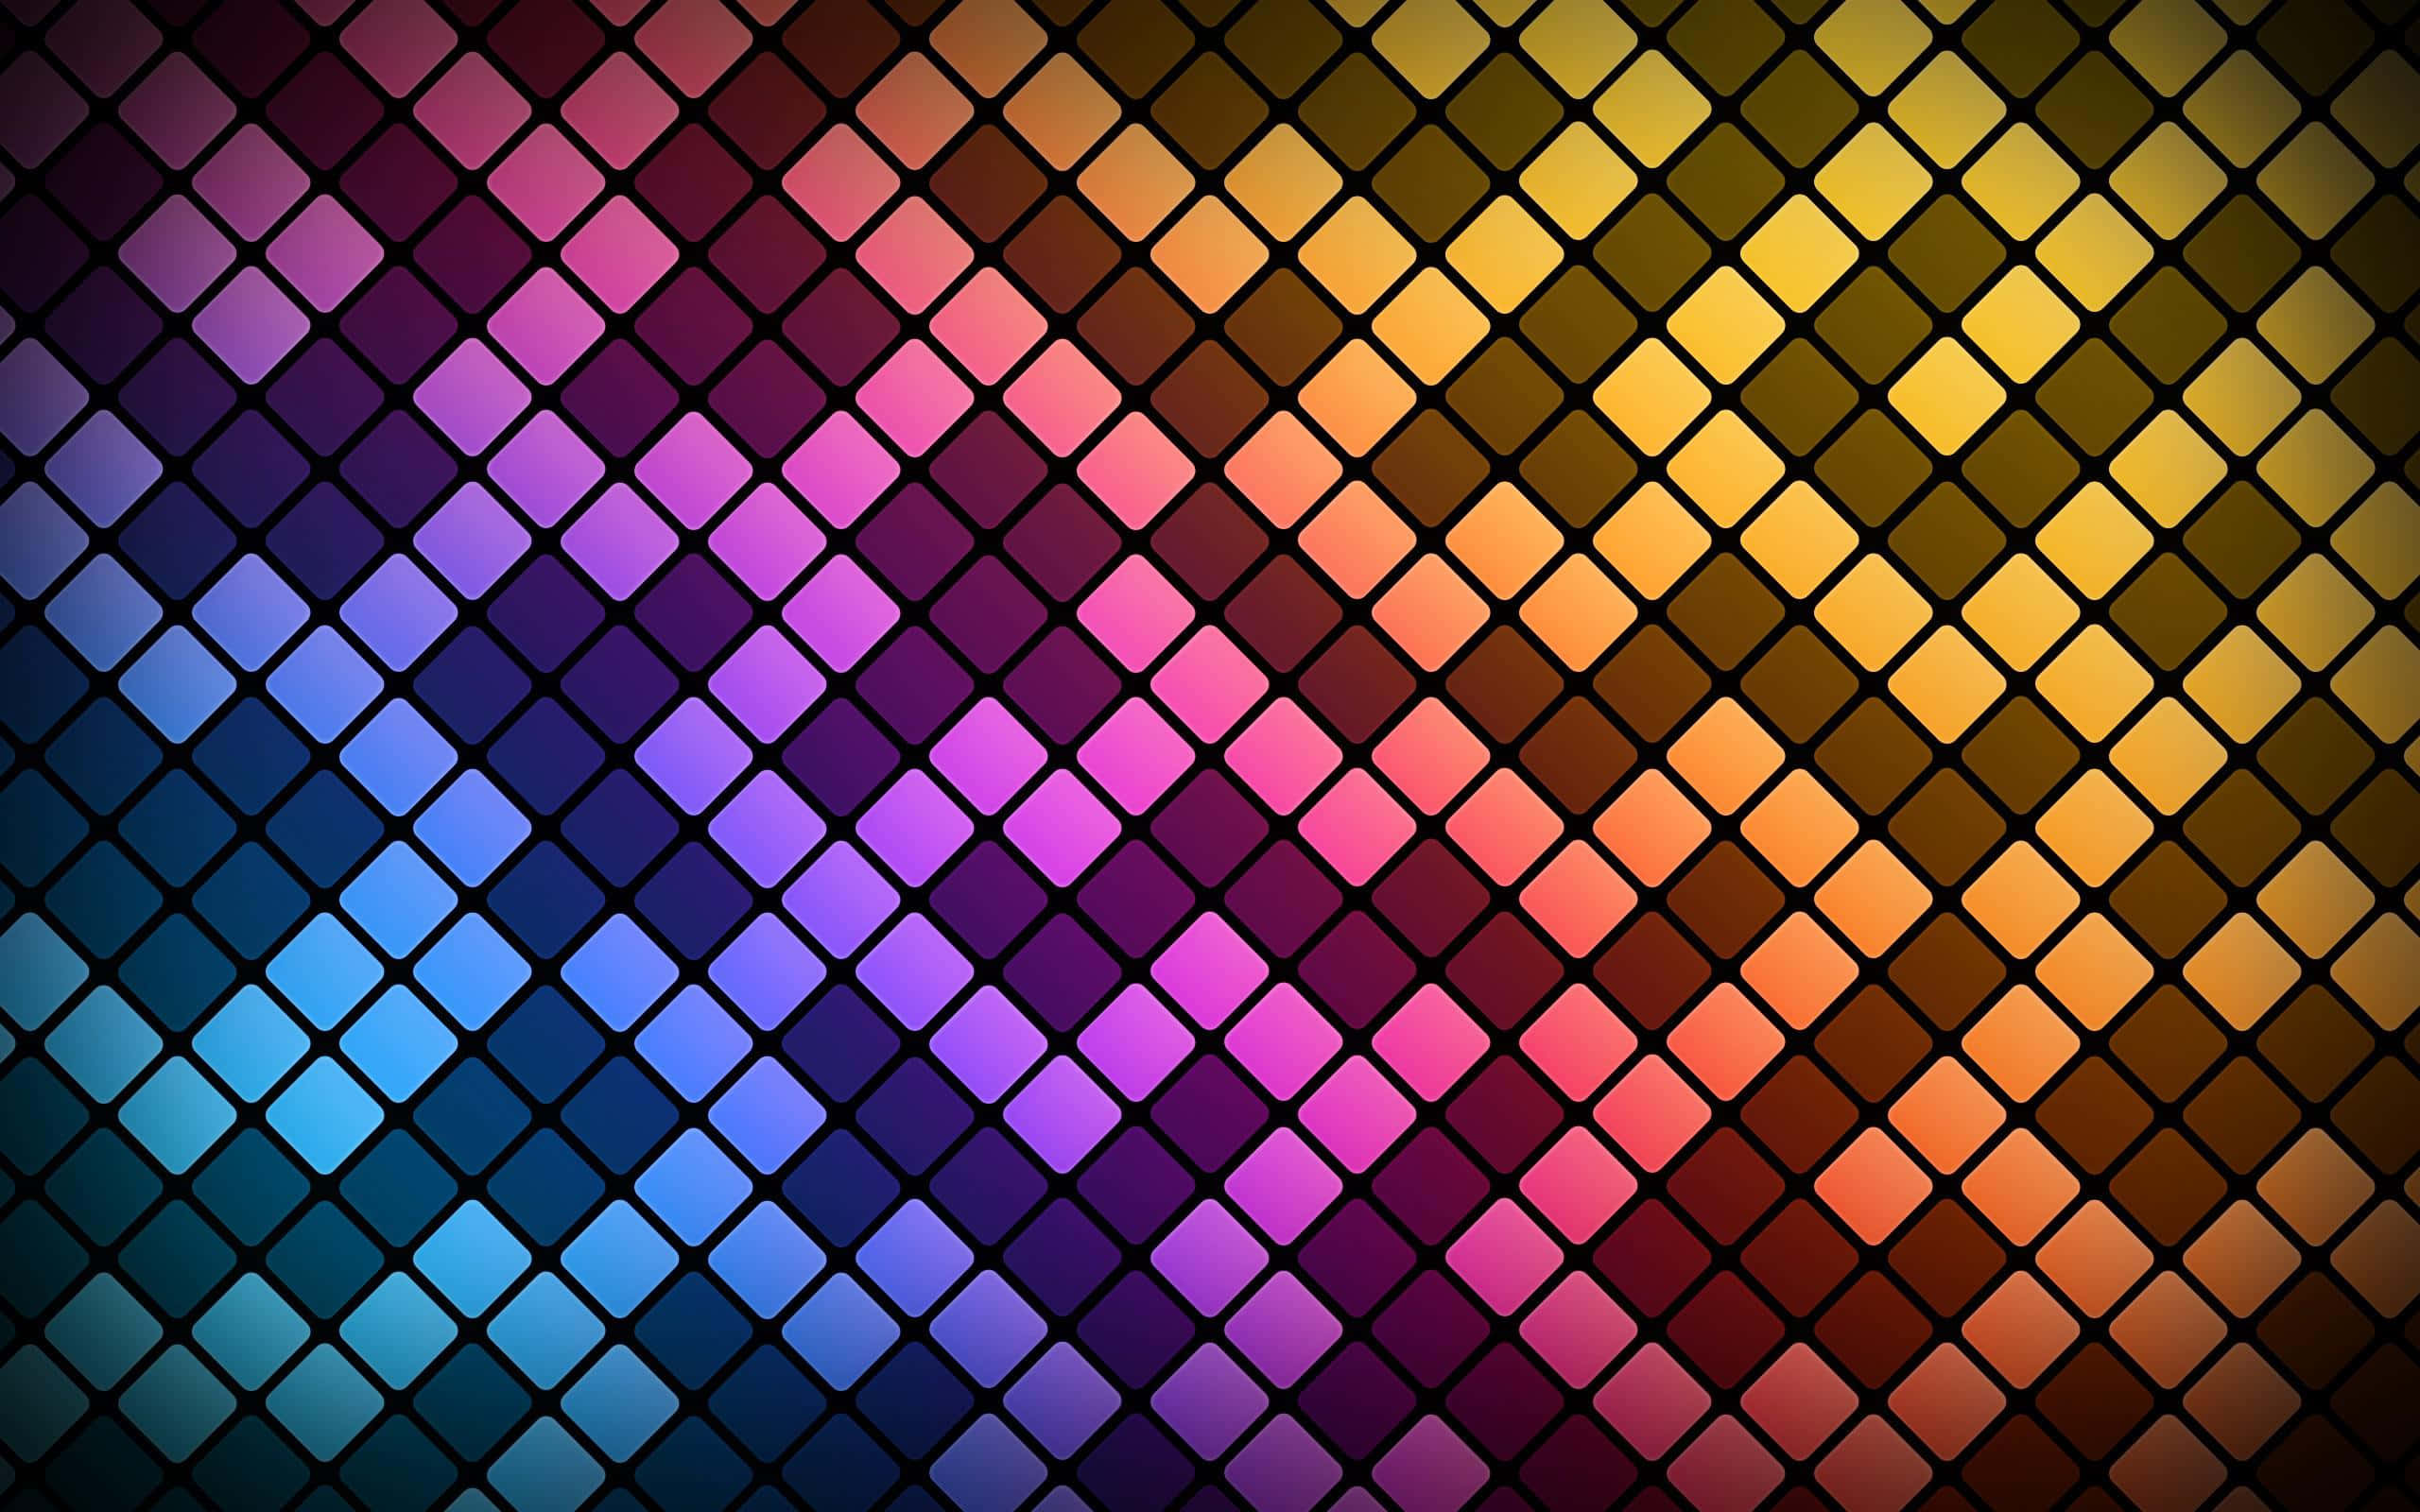 Classic Tetris Blocks in Colorful Arrangement